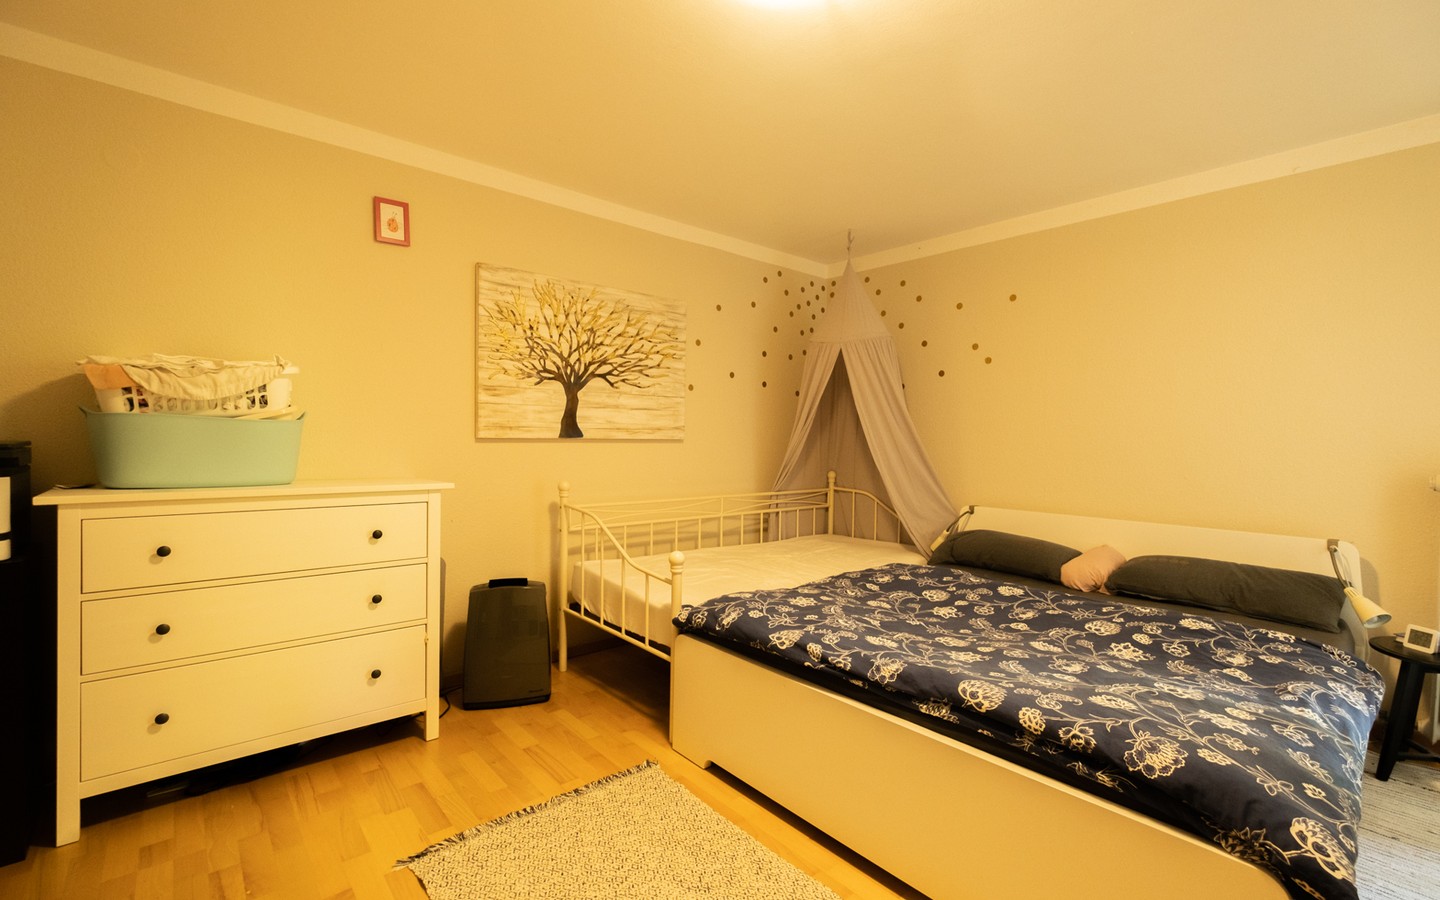 Schlafzimmer - Gelegenheit in Ziegelhausen: Großzügige 3-Zimmerwohnung mit parkähnlicher Außenanlage